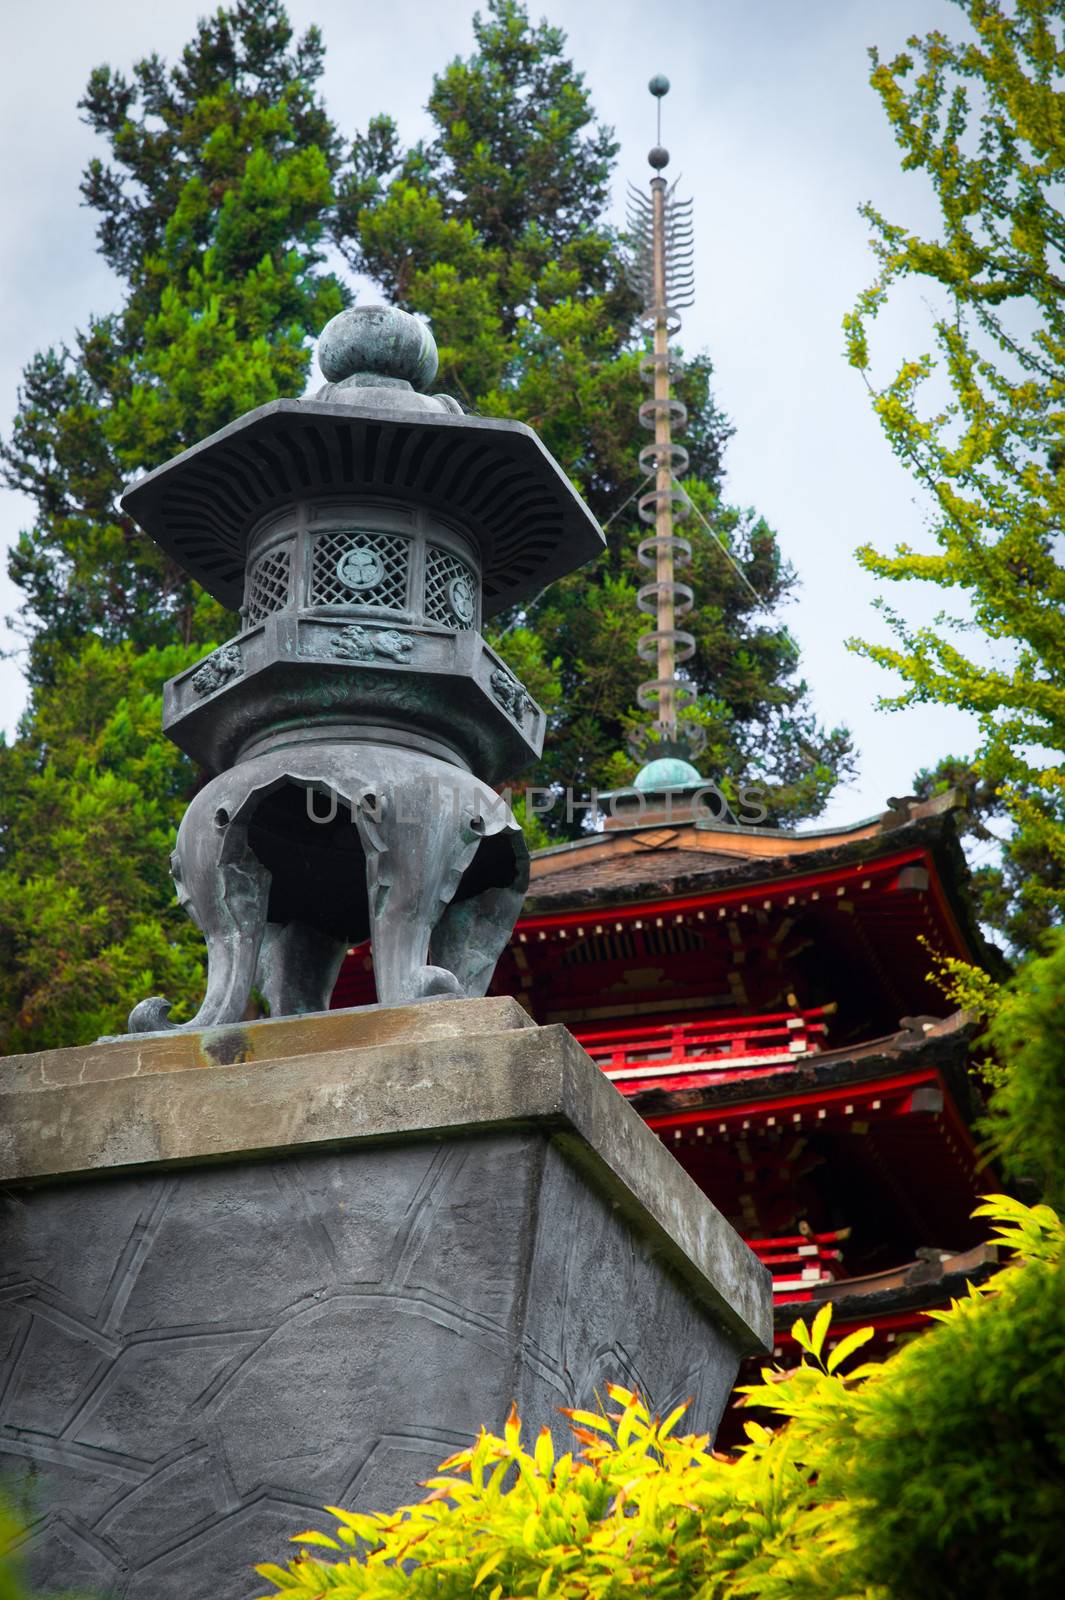 Pagoda in Japanese Tea Garden, San Francisco, California, USA